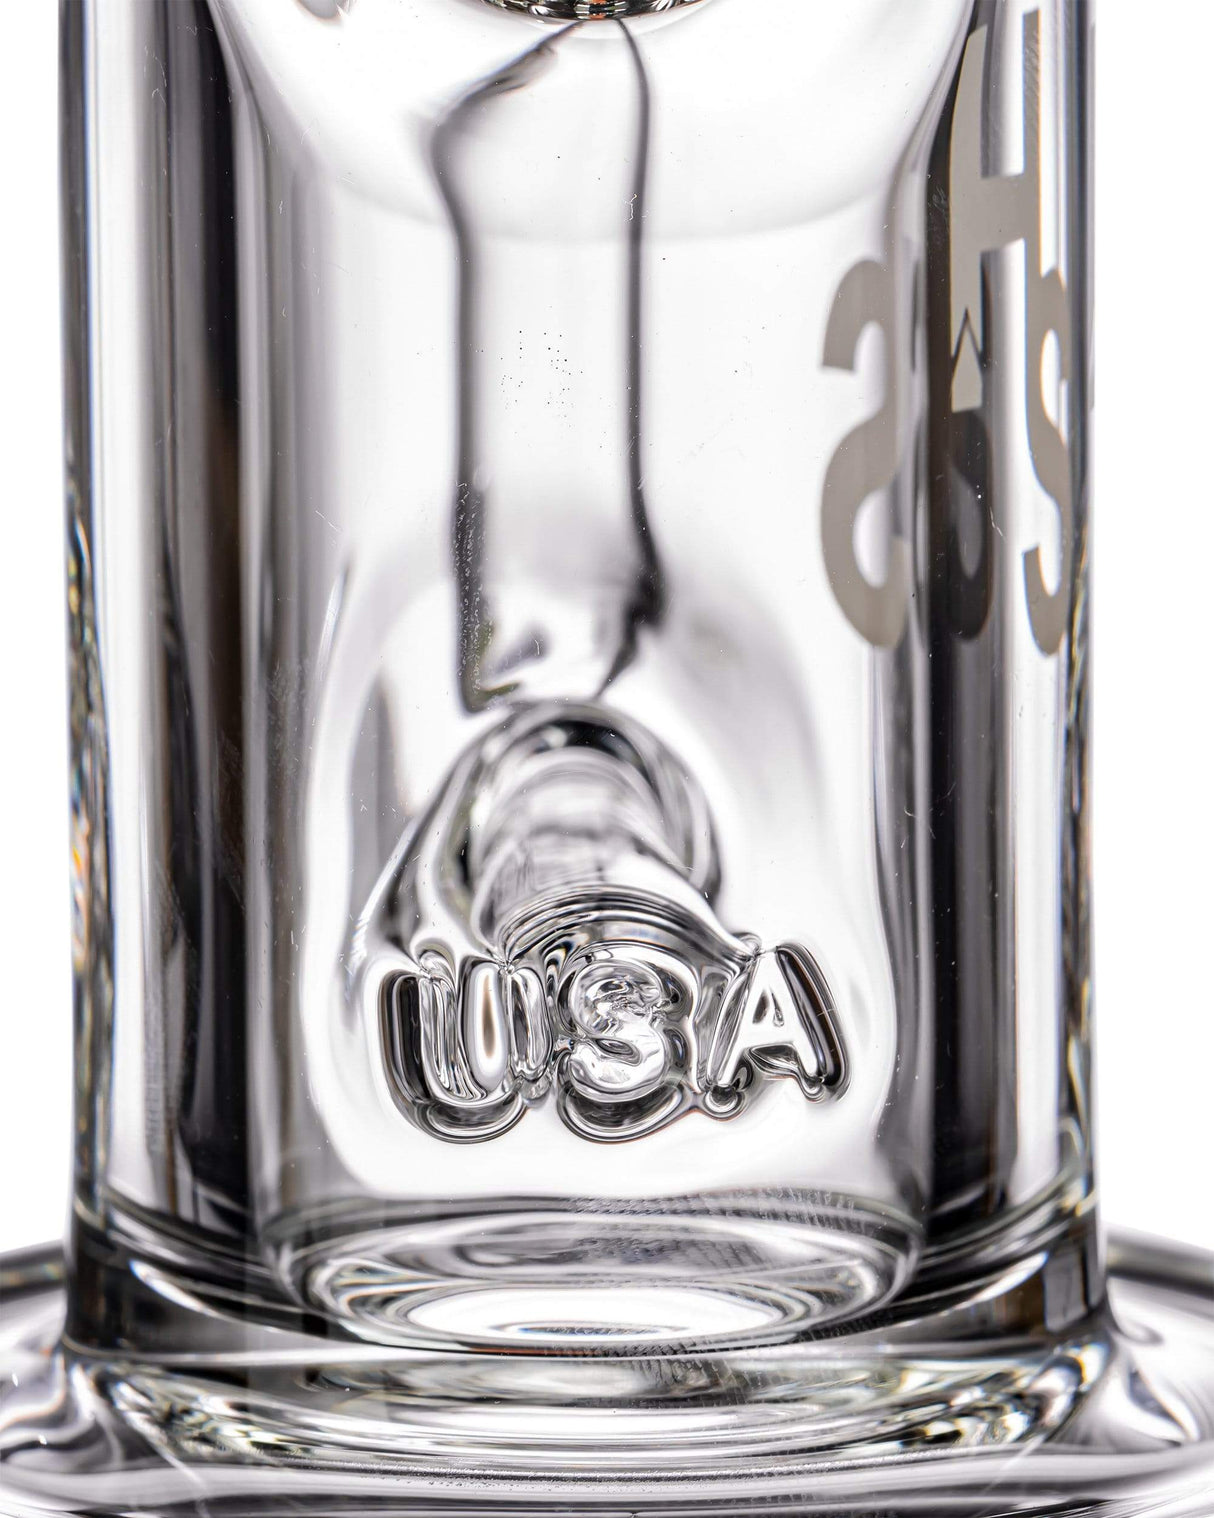 USA branded glass